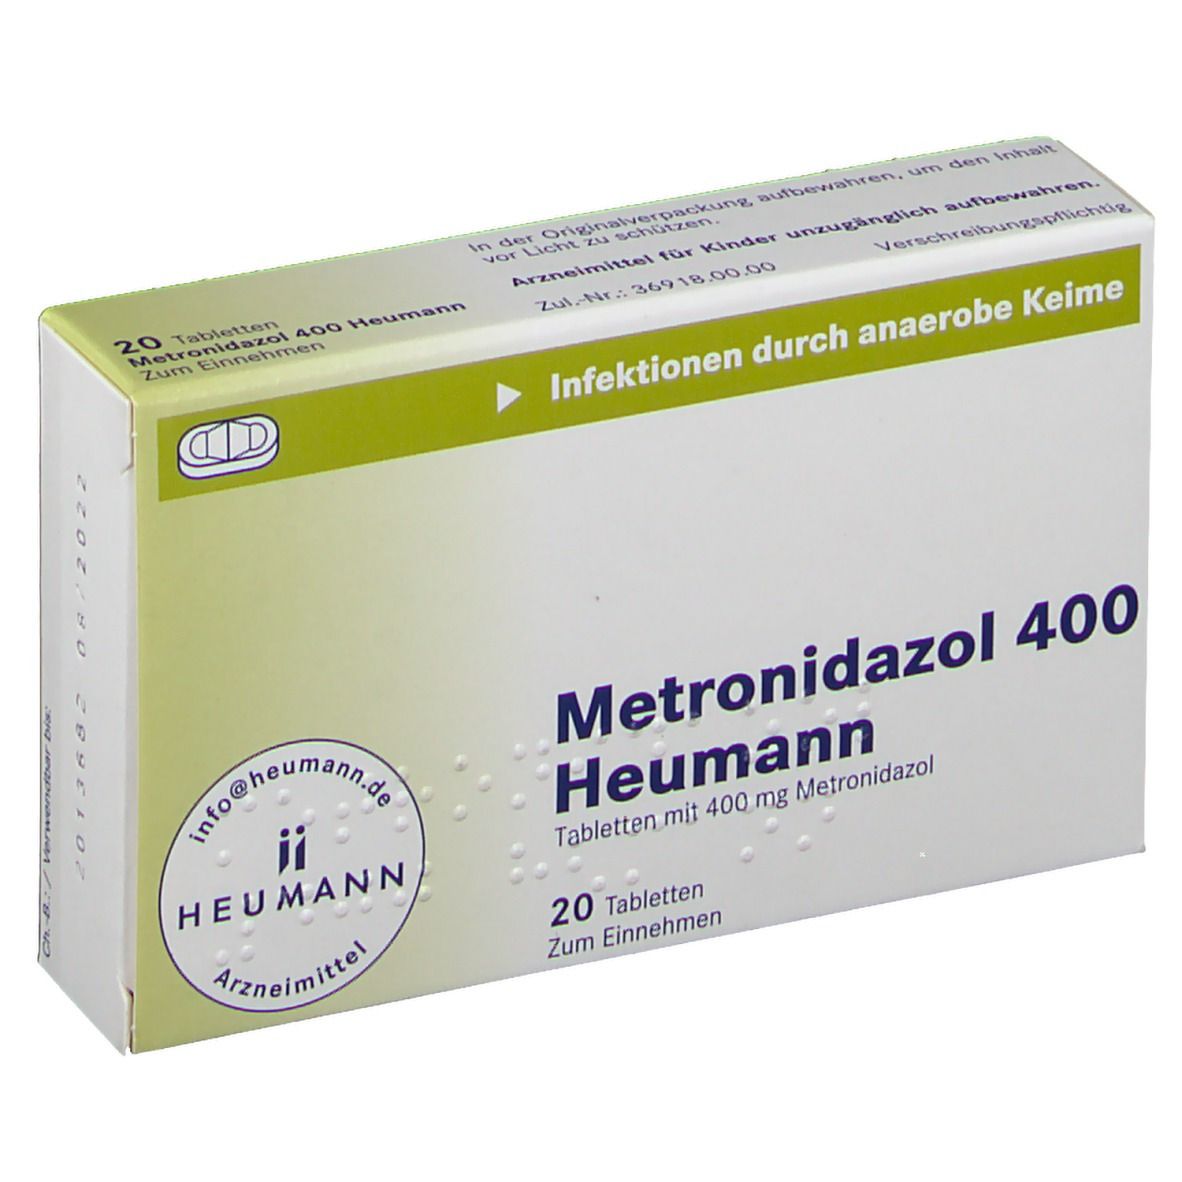 Metronidazol 400 Heumann